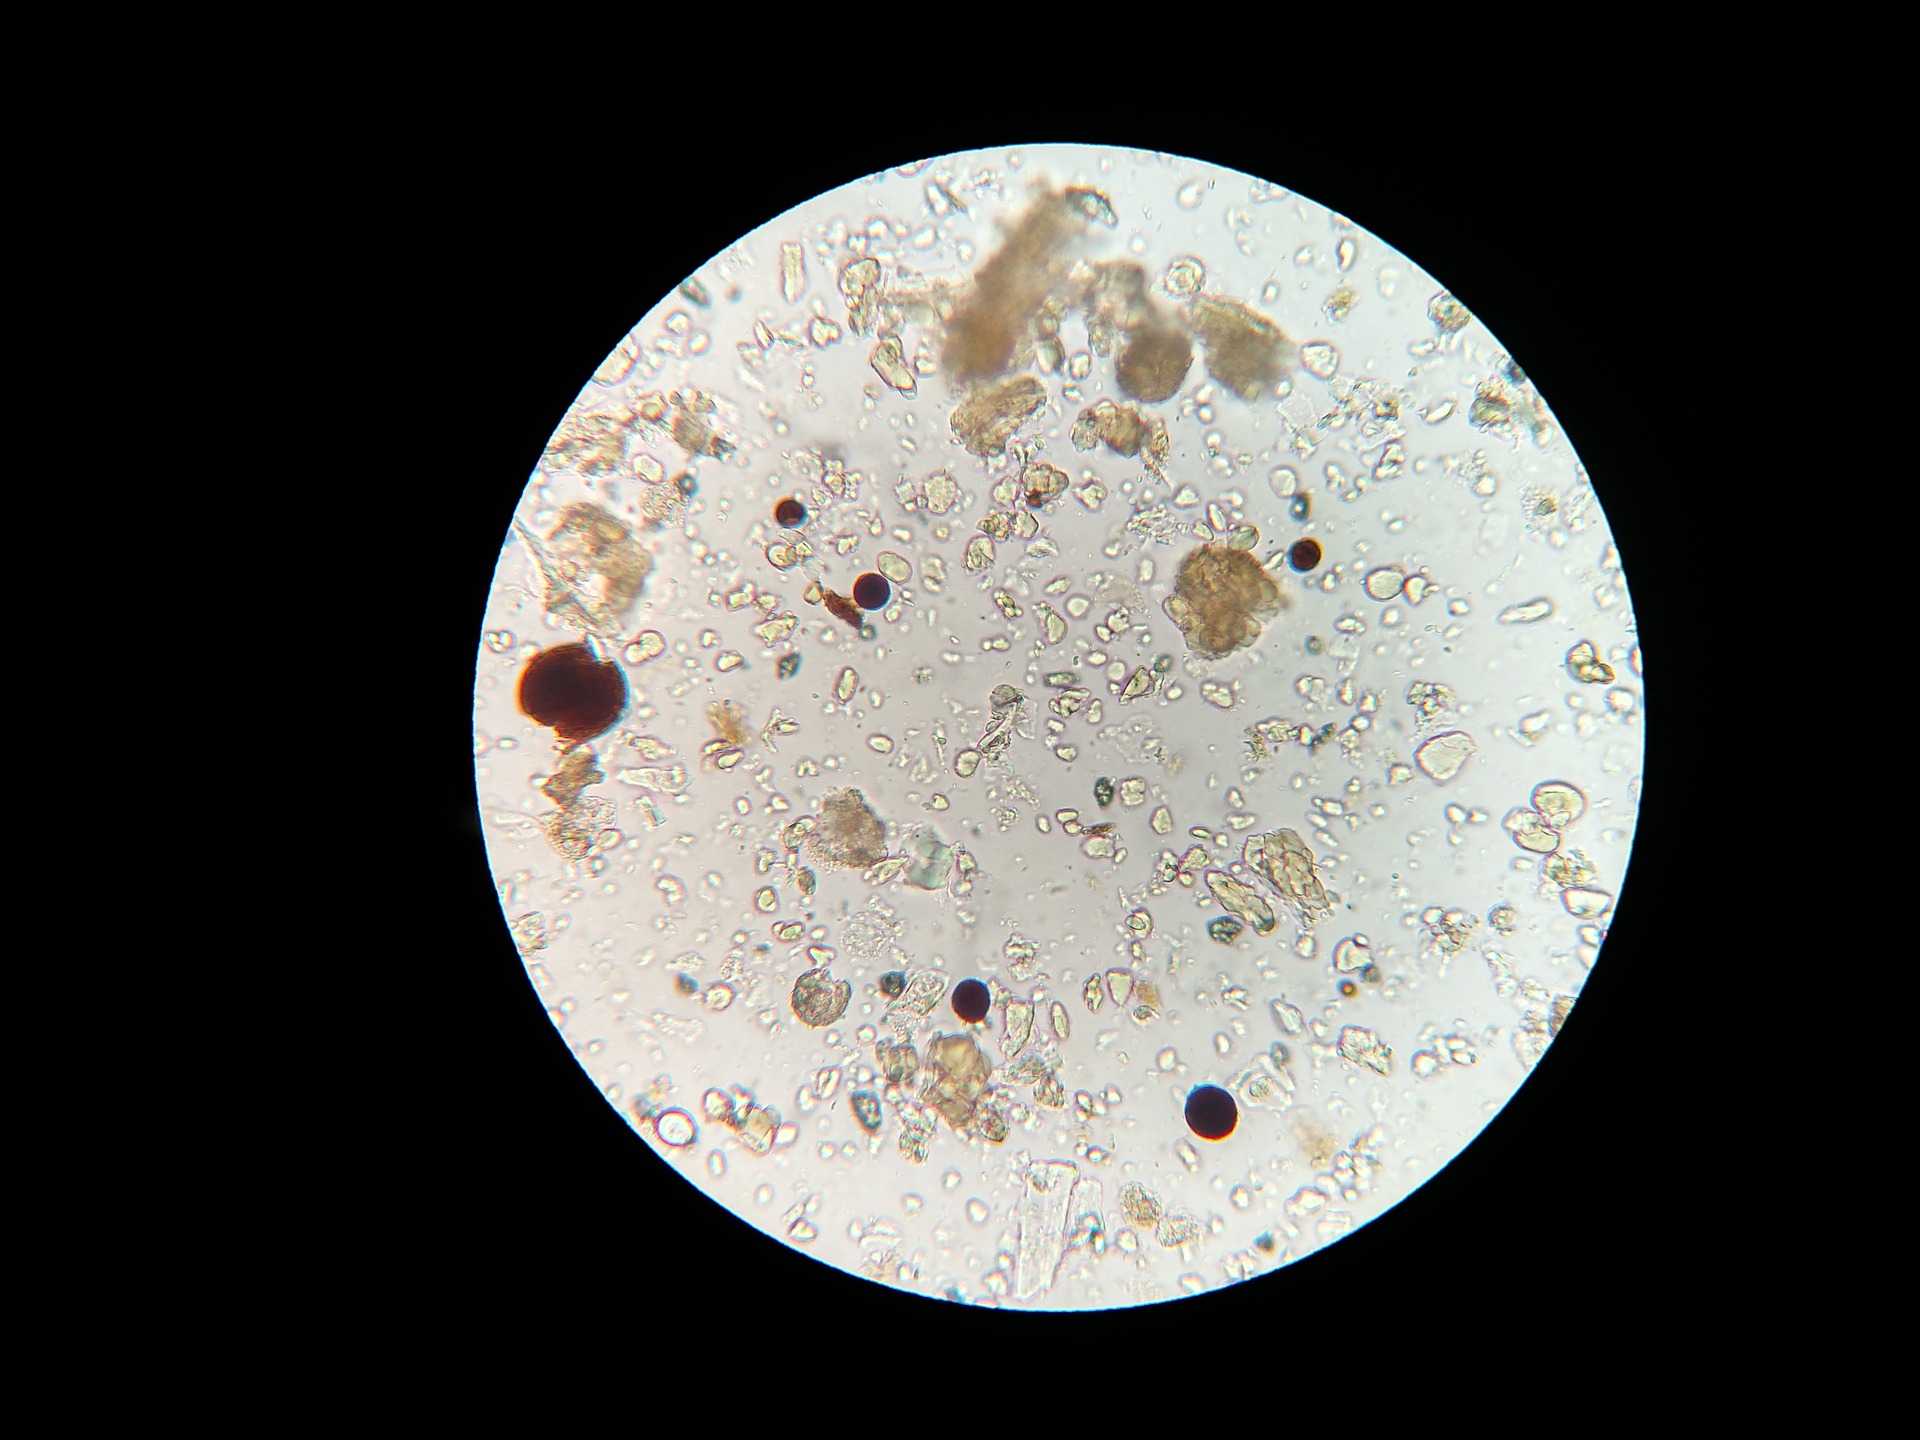 Infecciones polimicrobianas: microbios del suelo vistos desde un microscopio